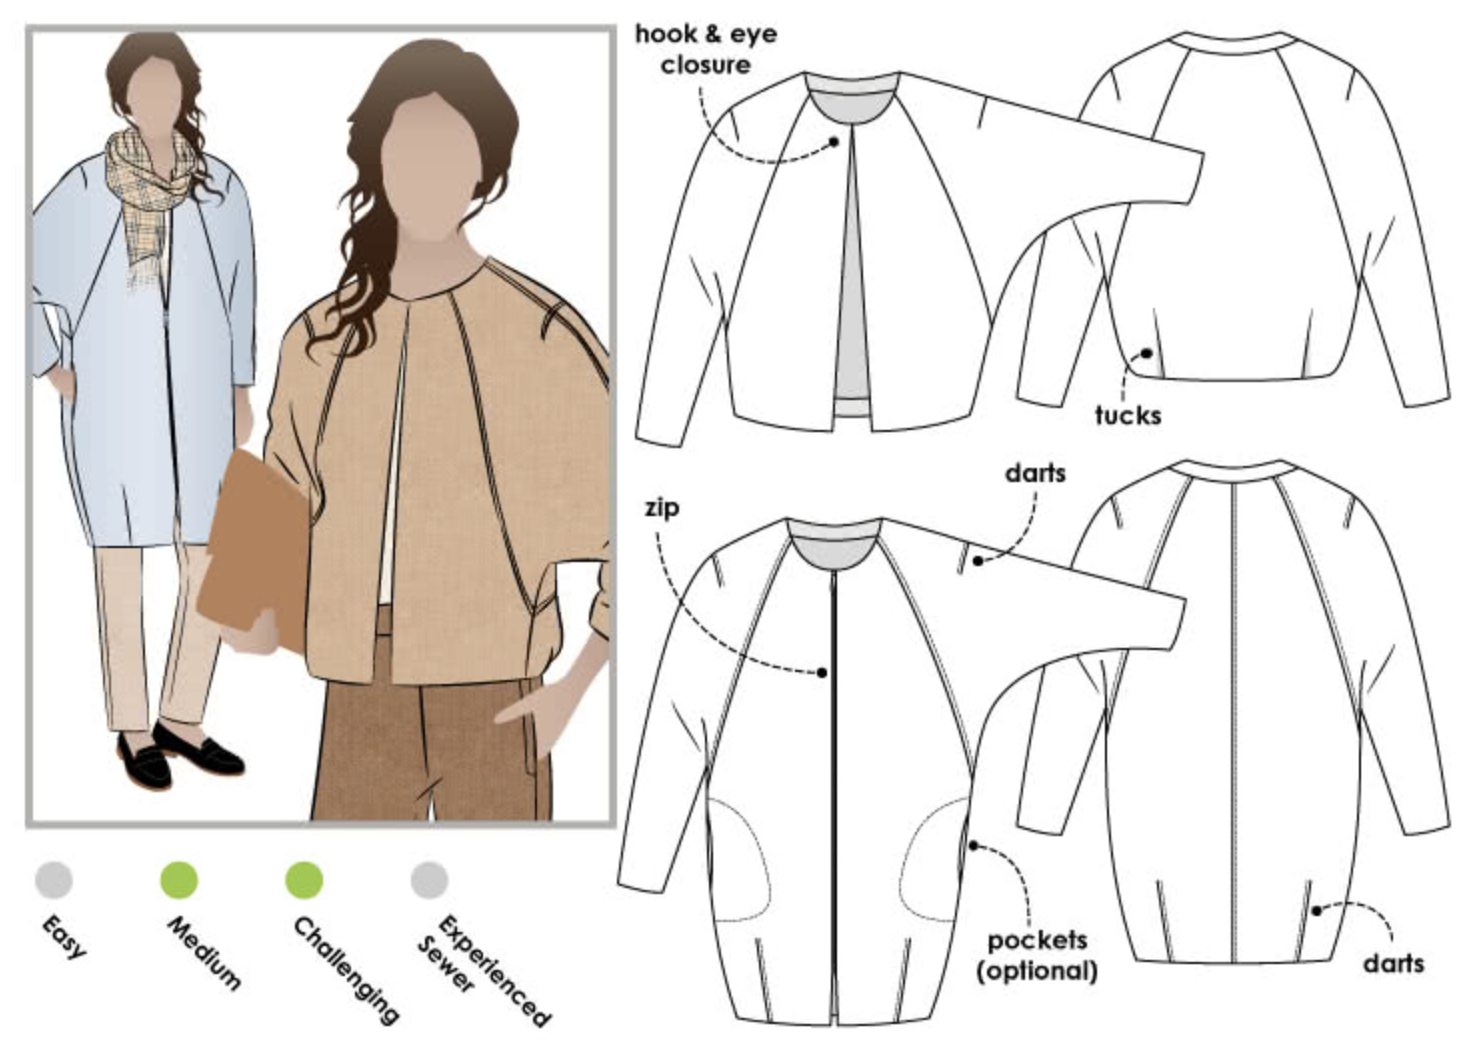 Style Arc Alegra Jacket and Coat